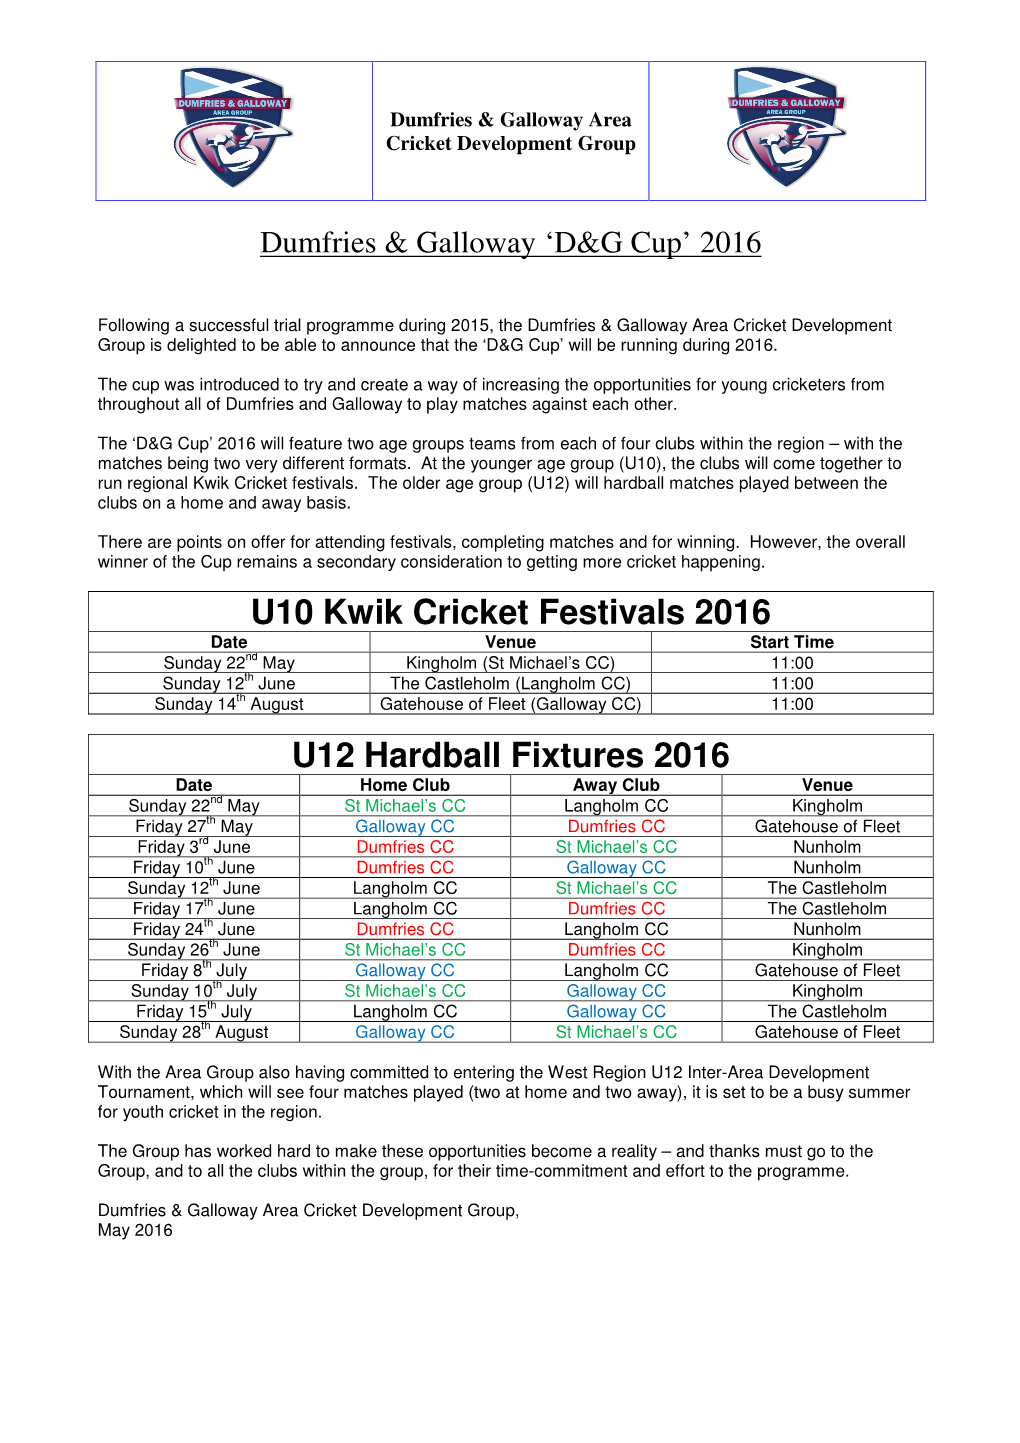 Dumfries & Galloway D&G Cup, 2016